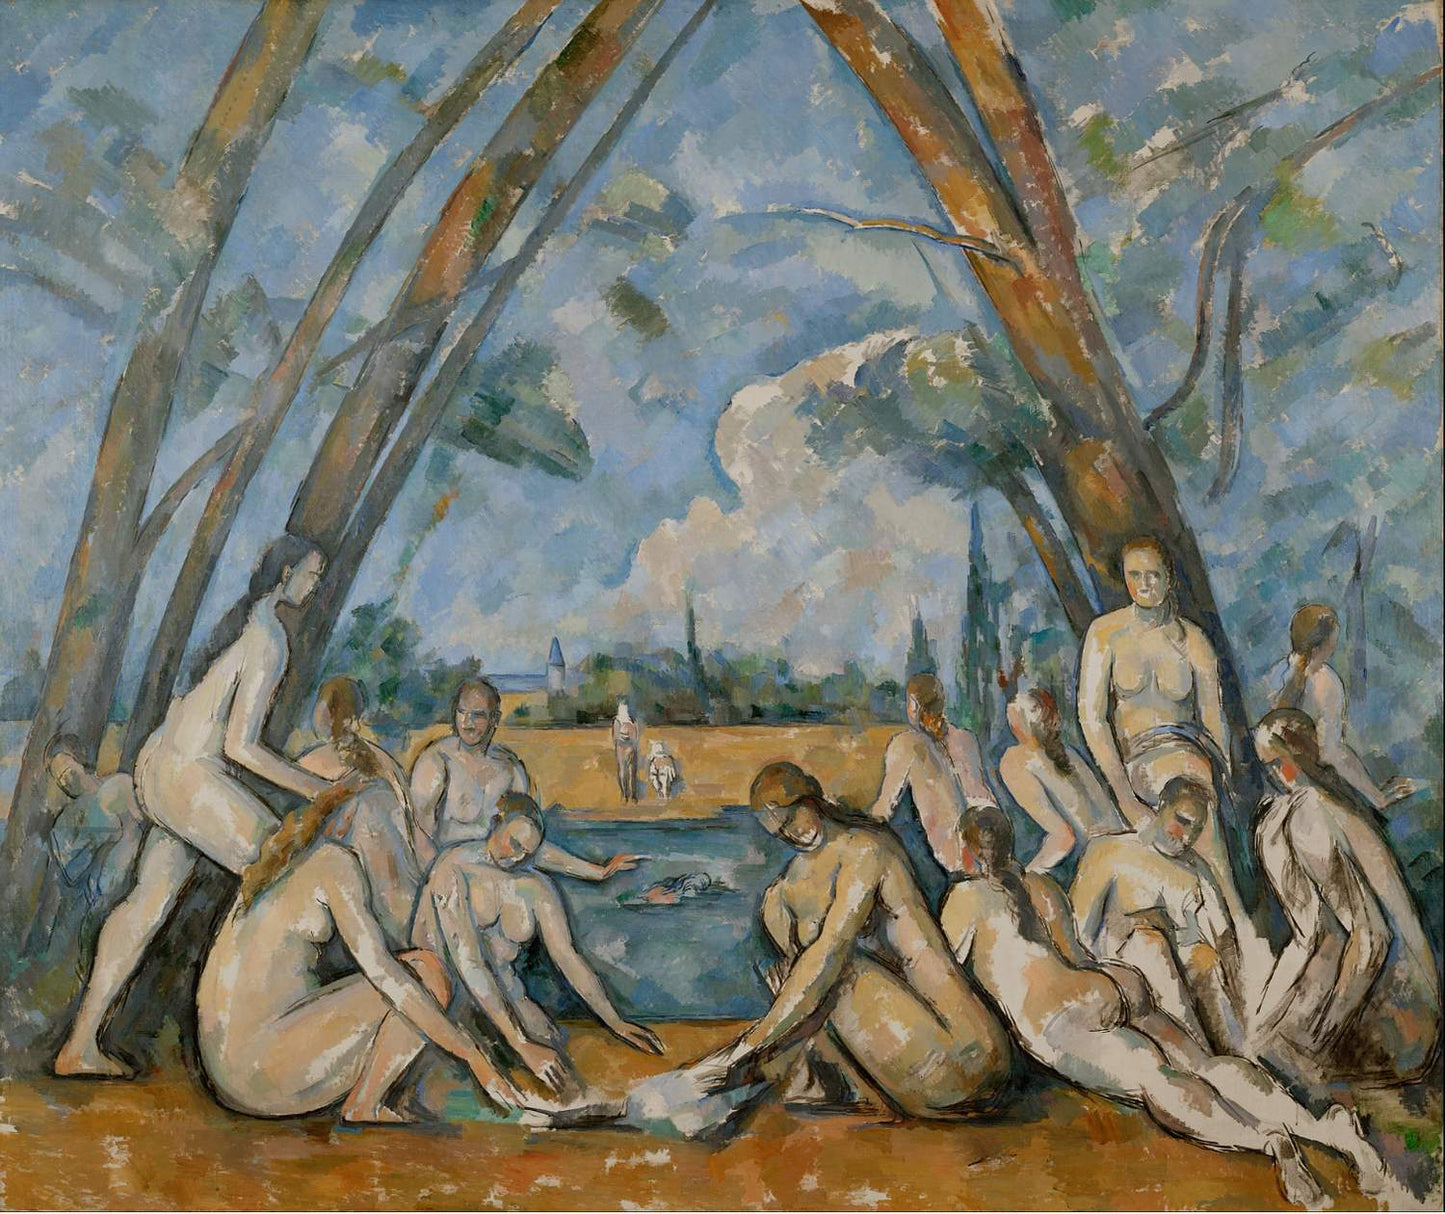 Triumph Poussinesque stability and balance, Paul Cézanne